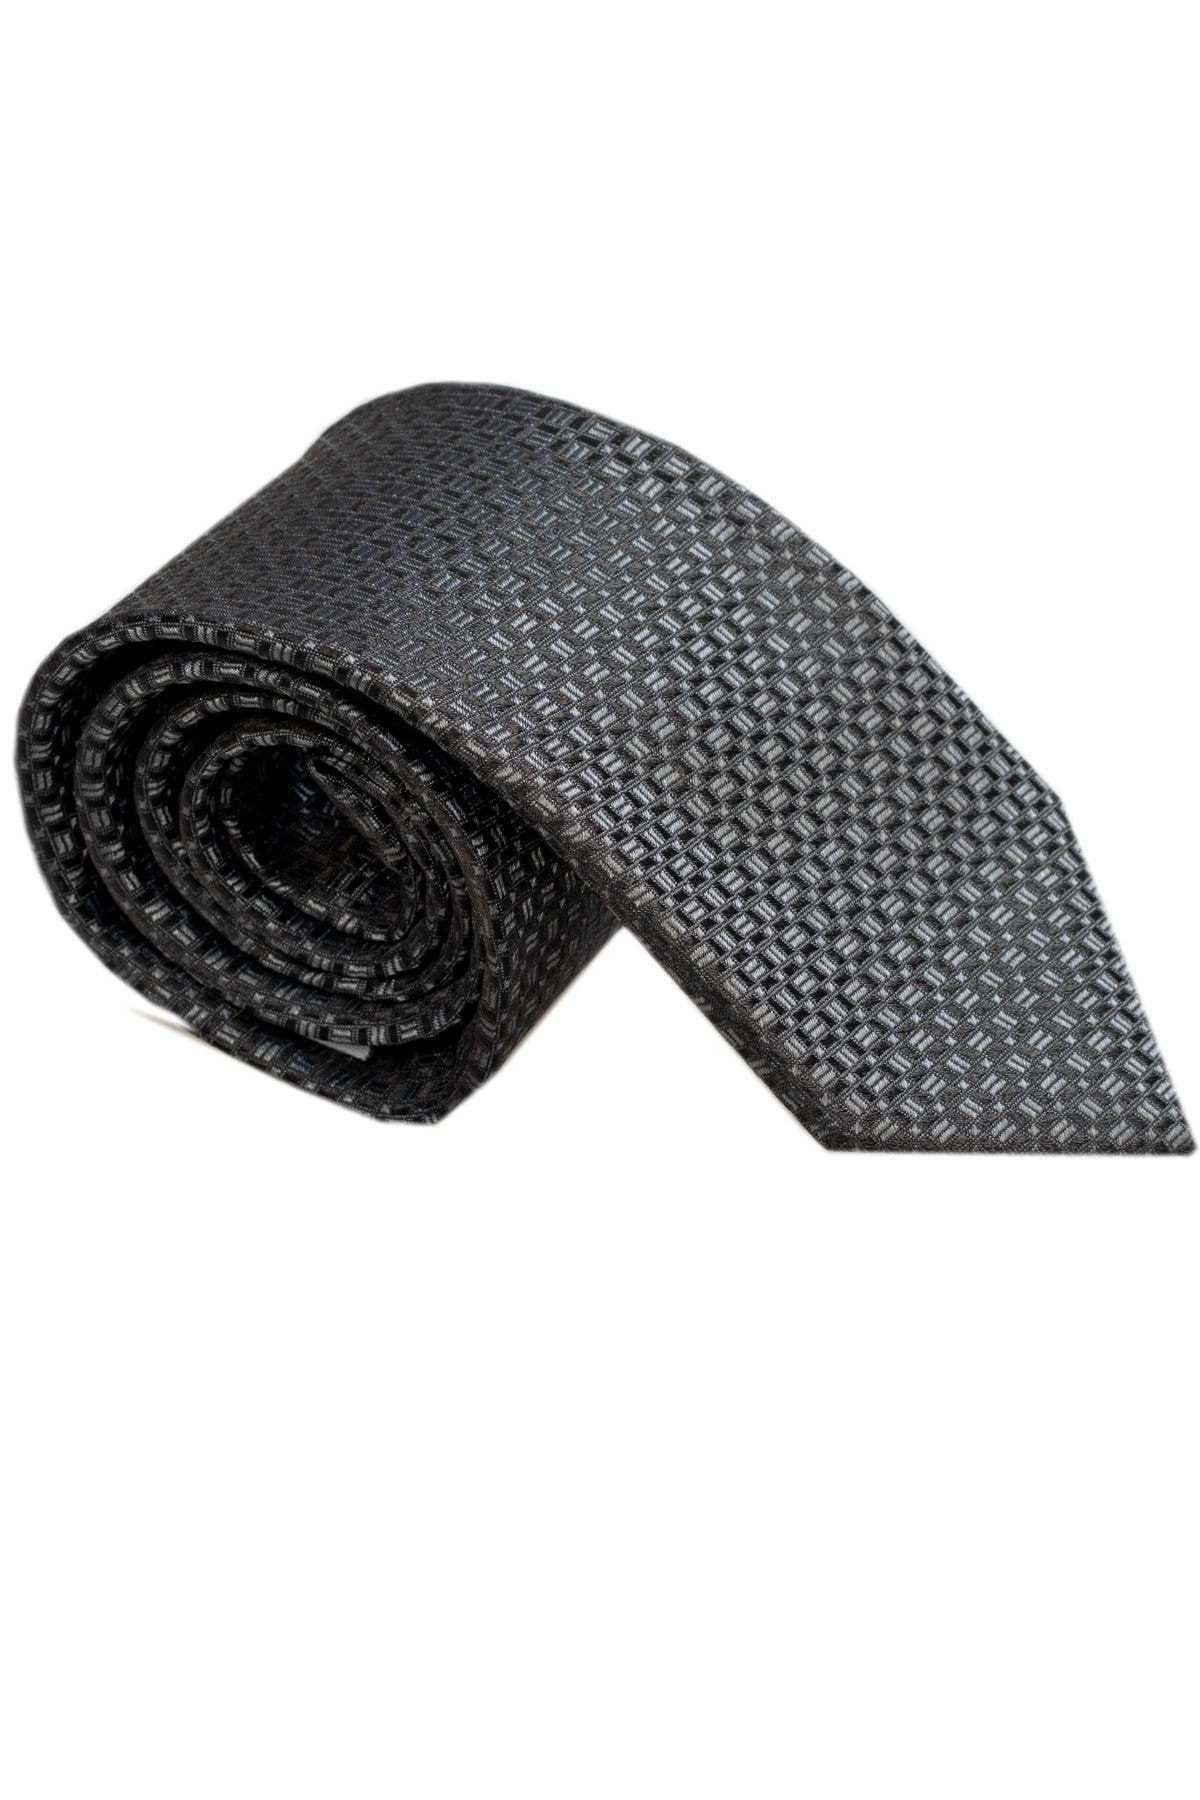 خرید کراوات خفن برند Exve Exclusive کد ty118749597